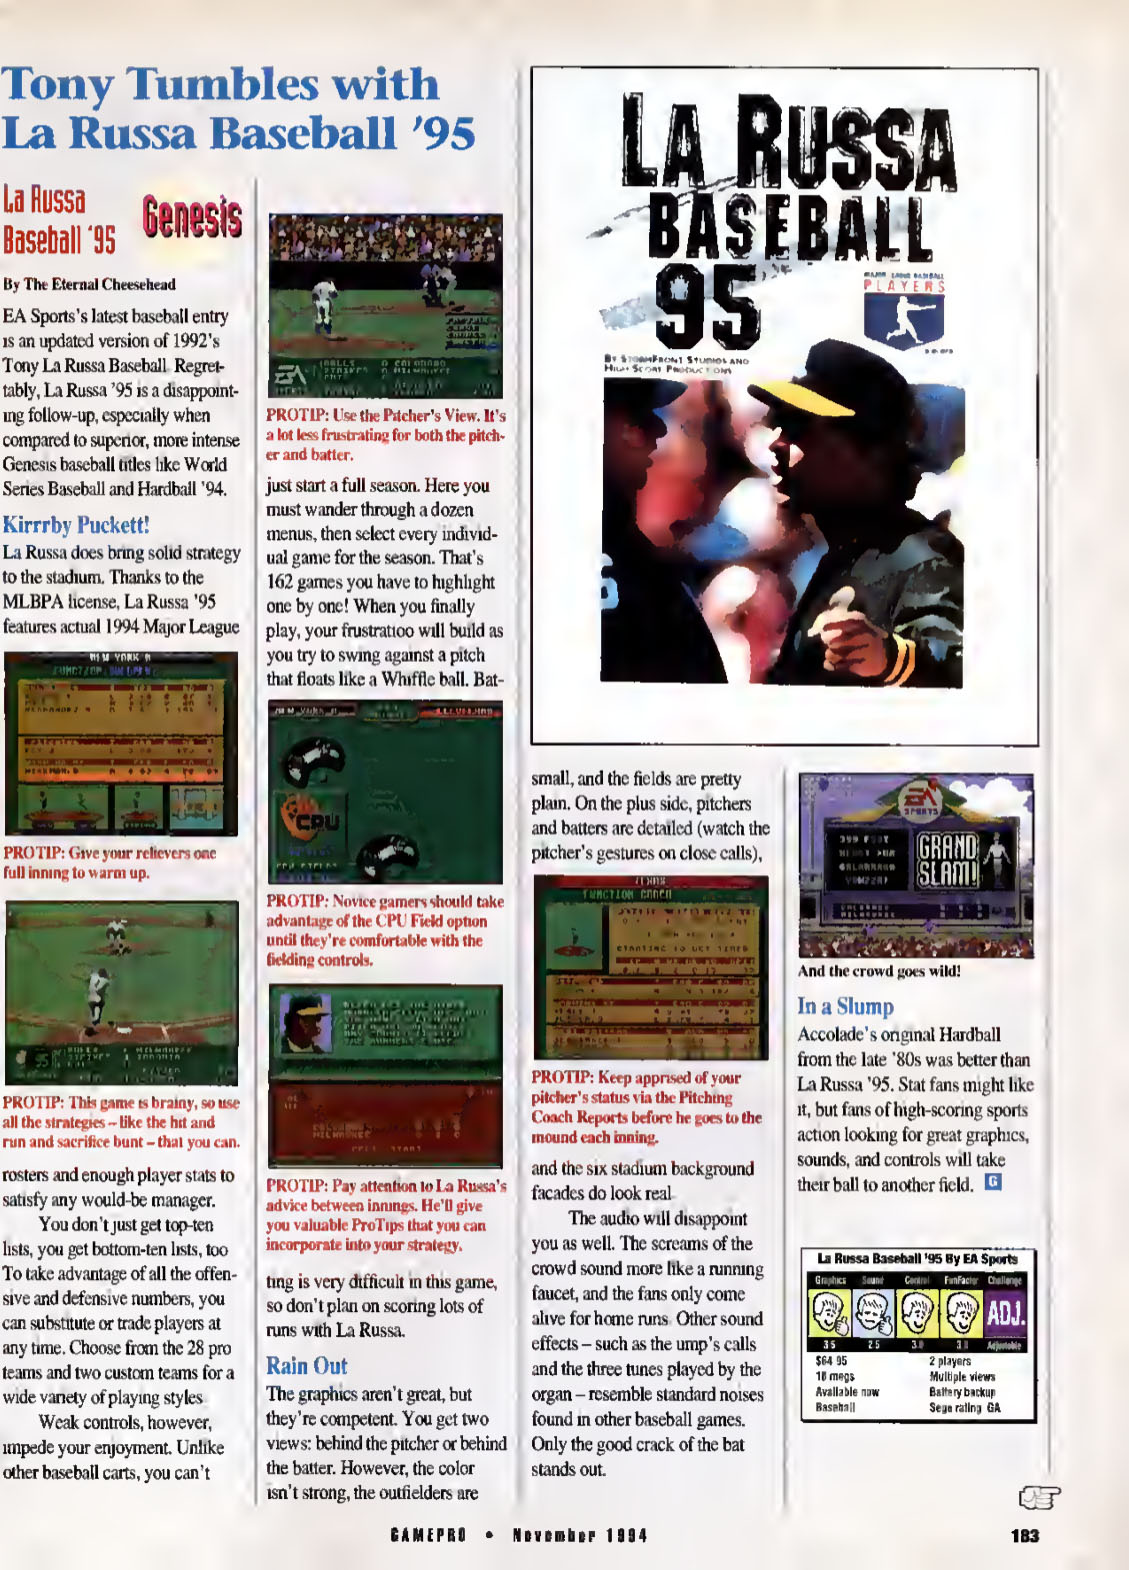 Tony Tumbles with La Russa Baseball '95, GamePro November 1994 page 183